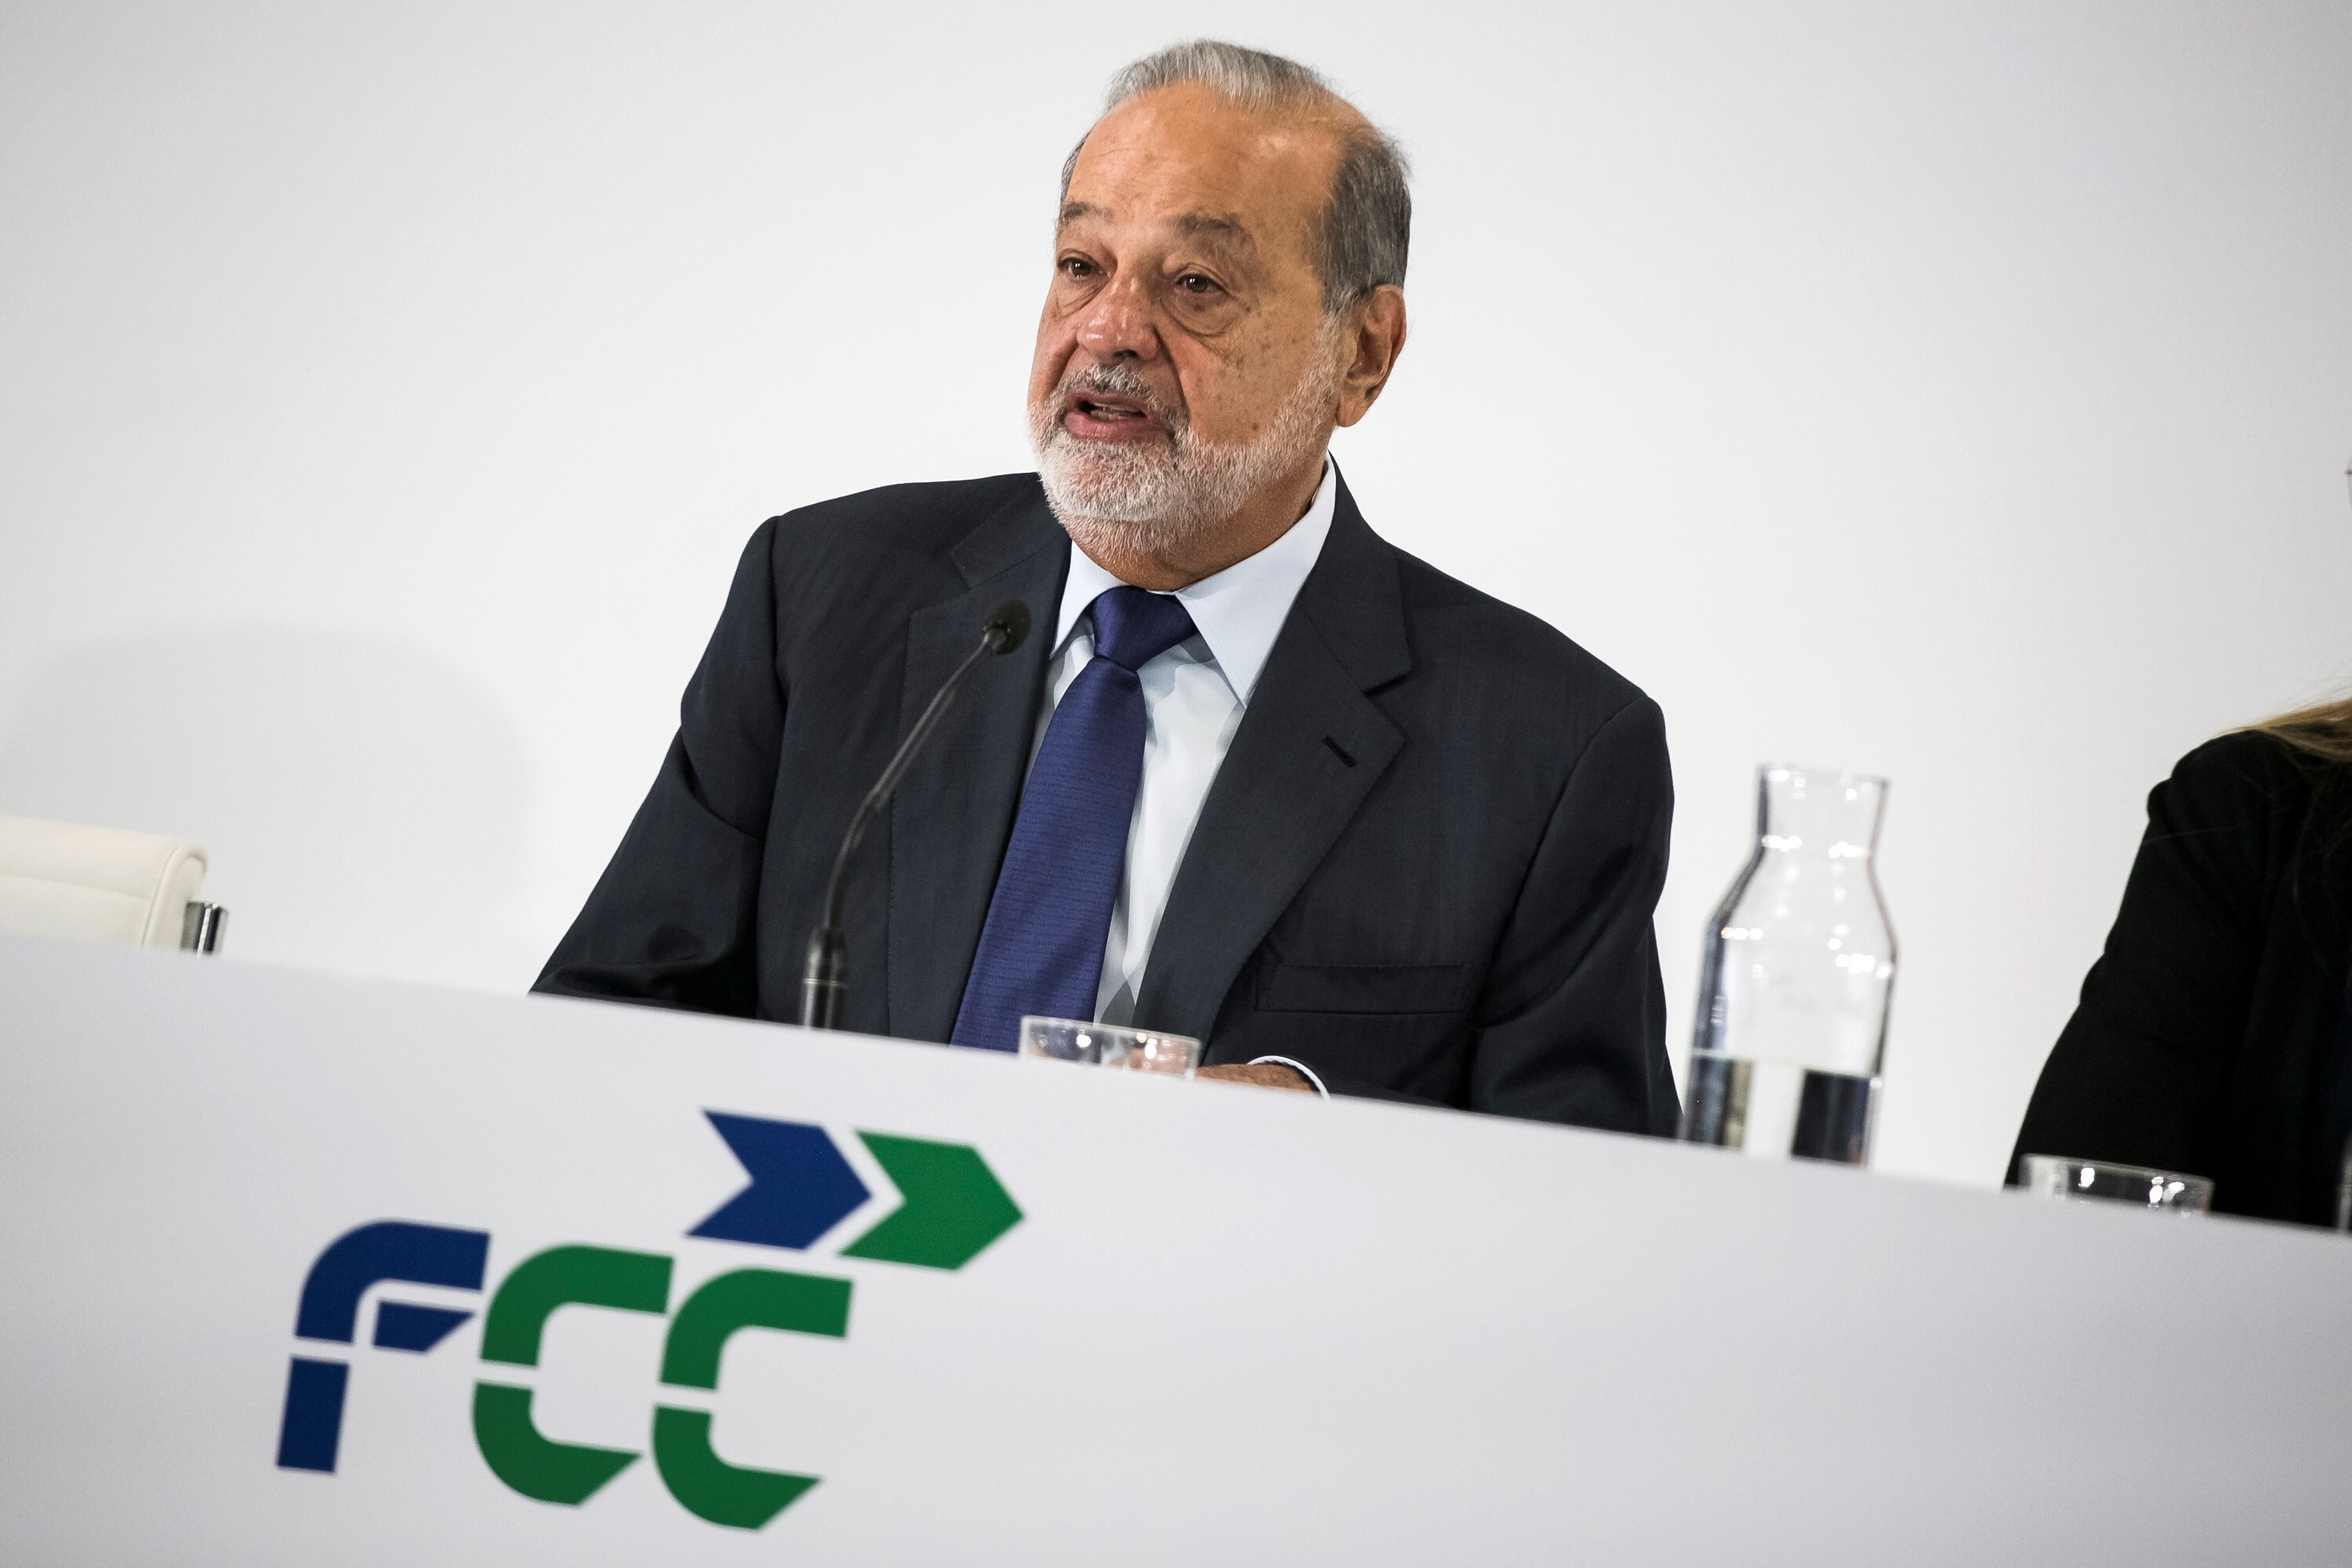 El empresario Carlos Slim cumple este viernes 82 años. EFE/ Santi Donaire/Archivo
